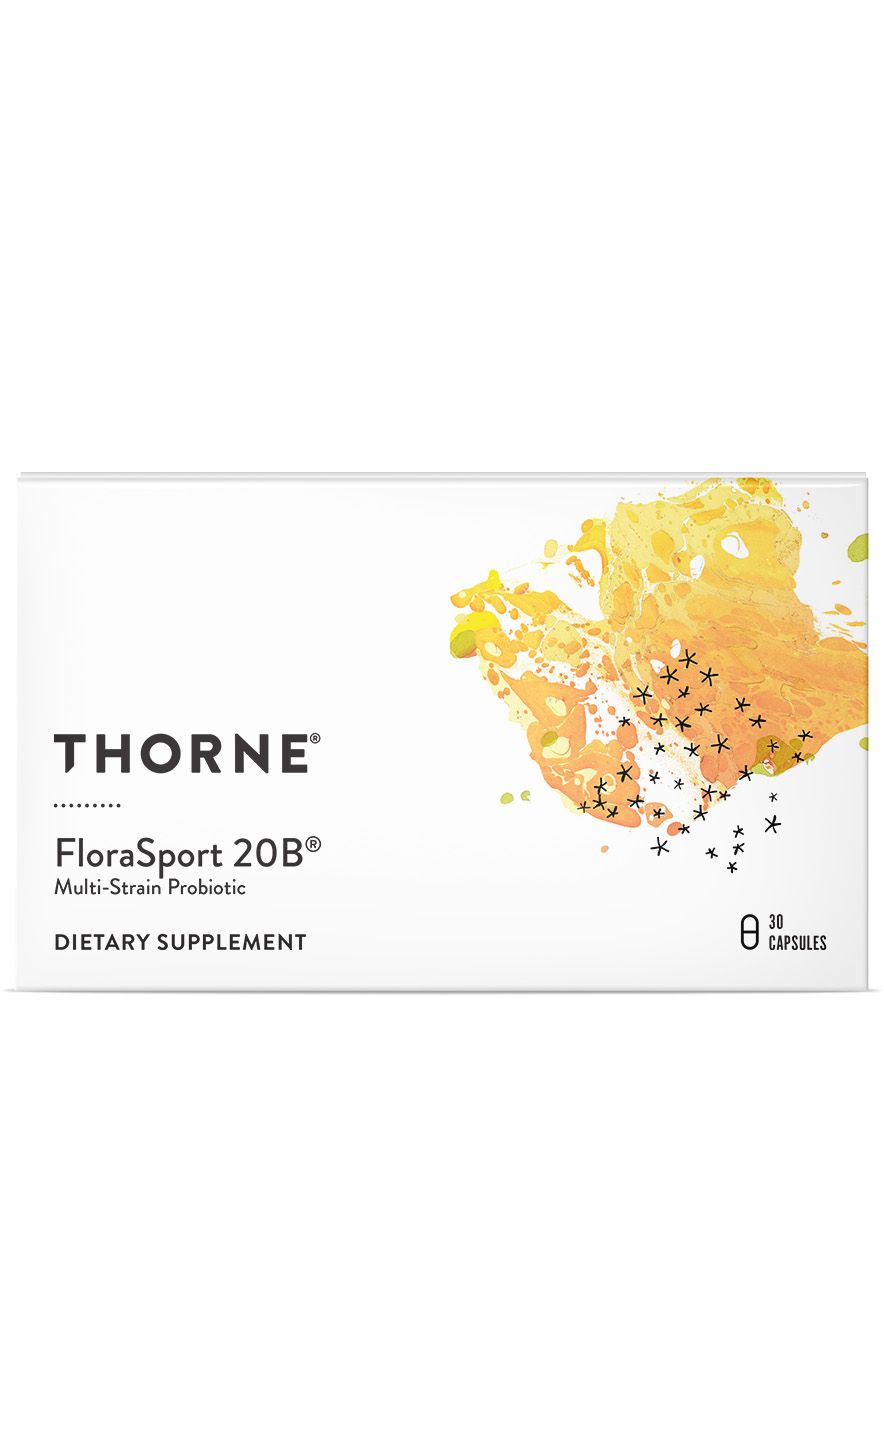 Thorne FloraSport 20B